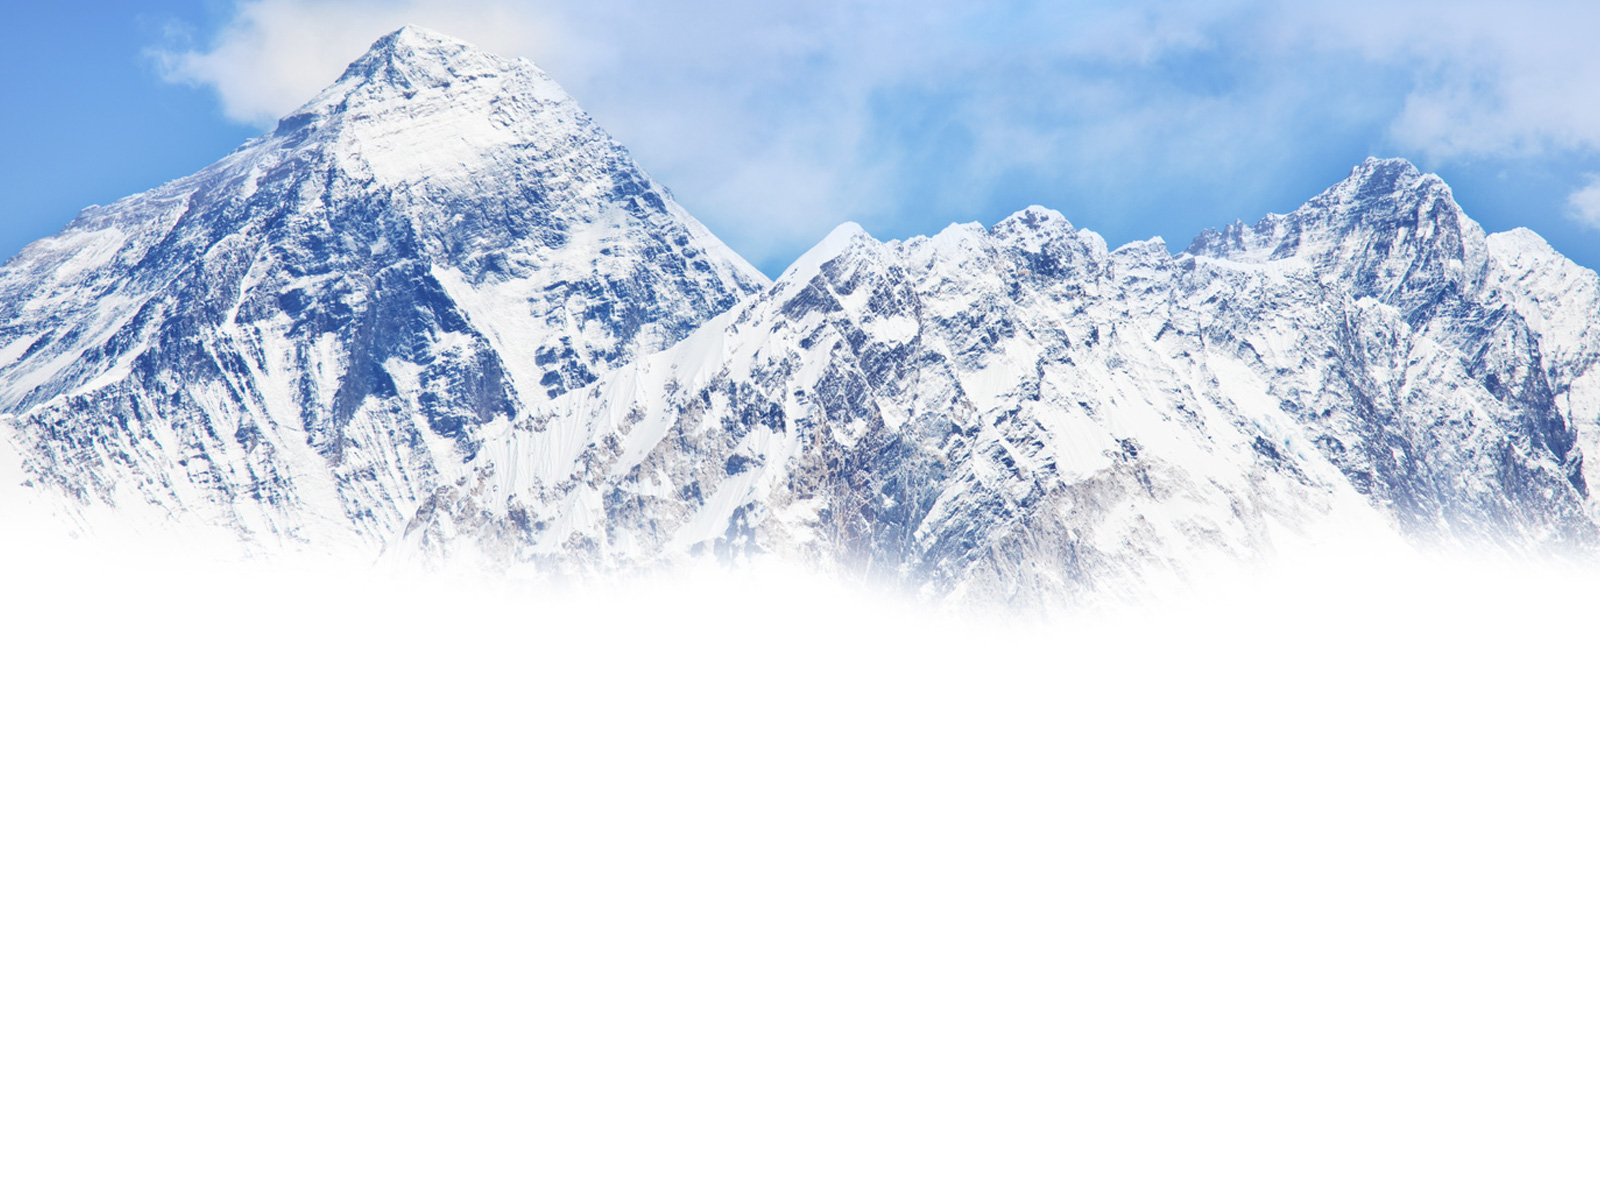 Everest widziany z Nepalu, fot. Galyna Andrushko